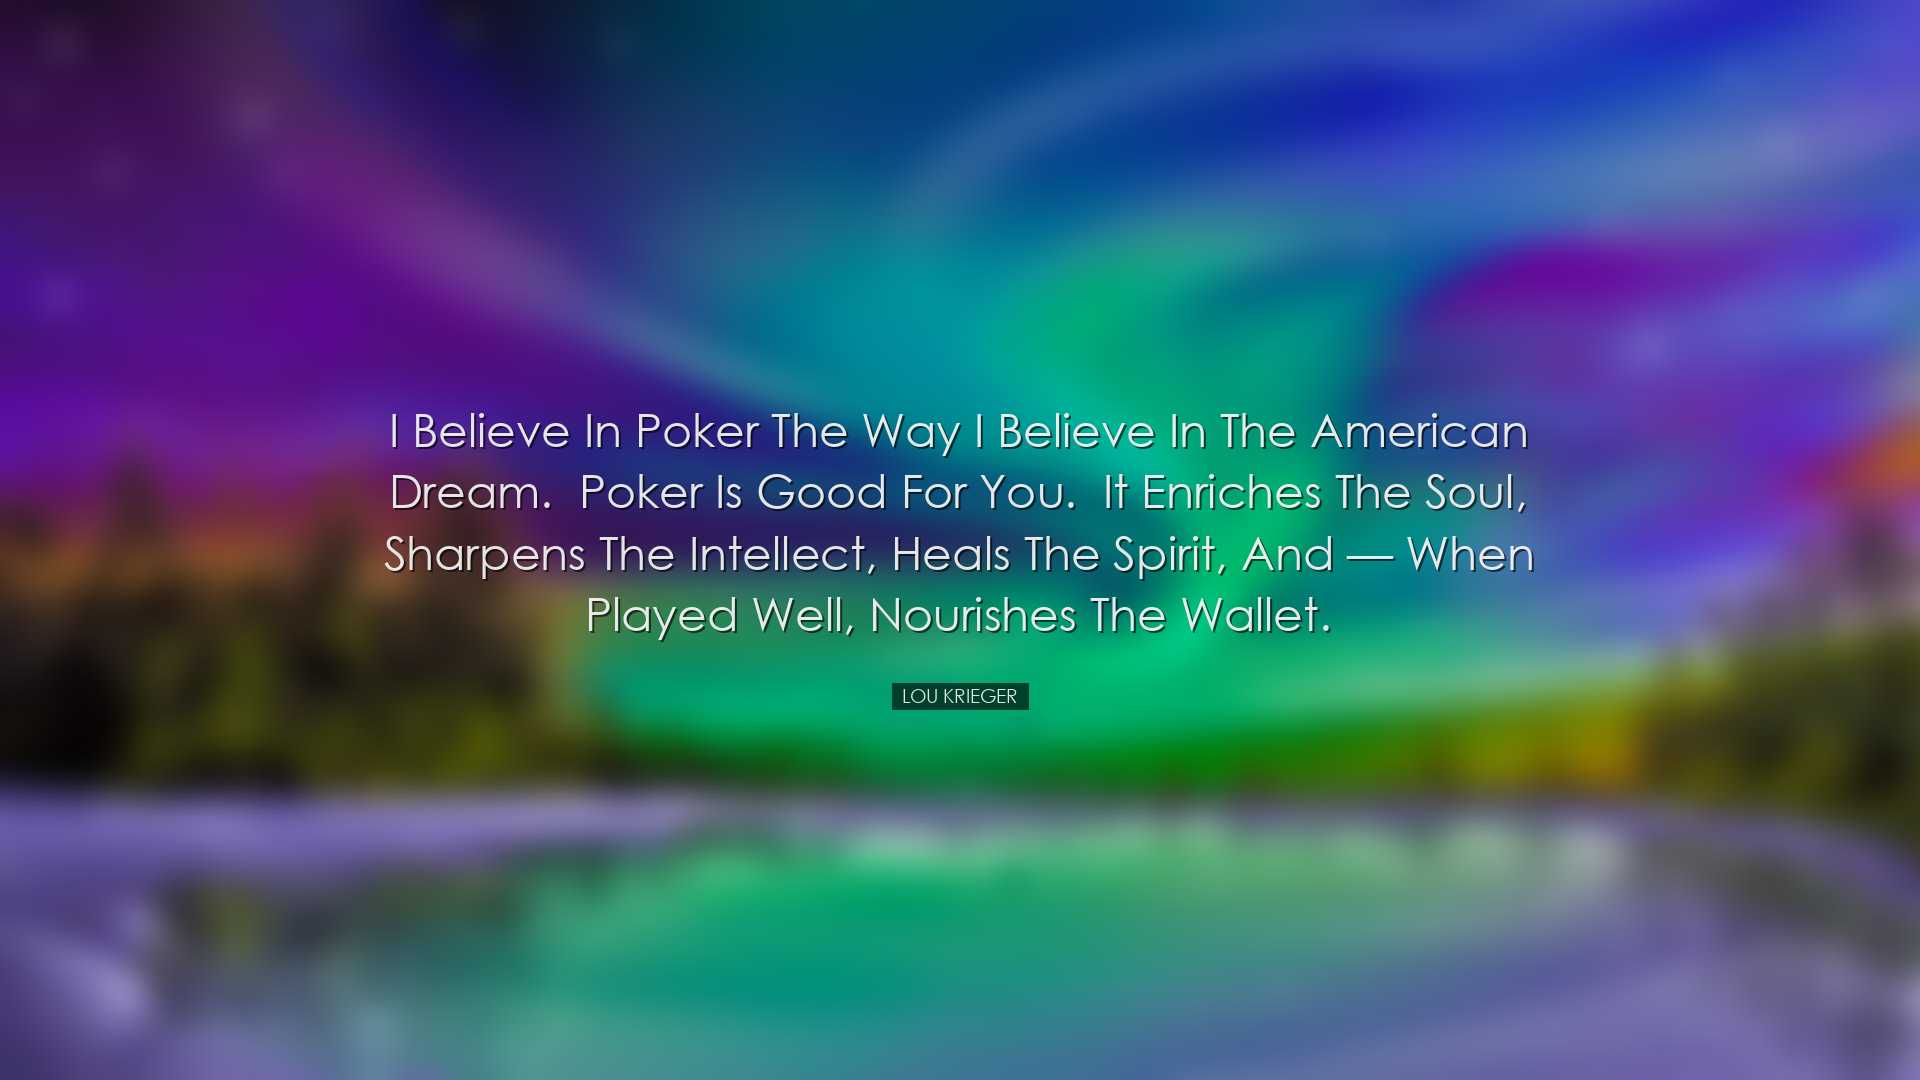 I believe in poker the way I believe in the American Dream.  Poker